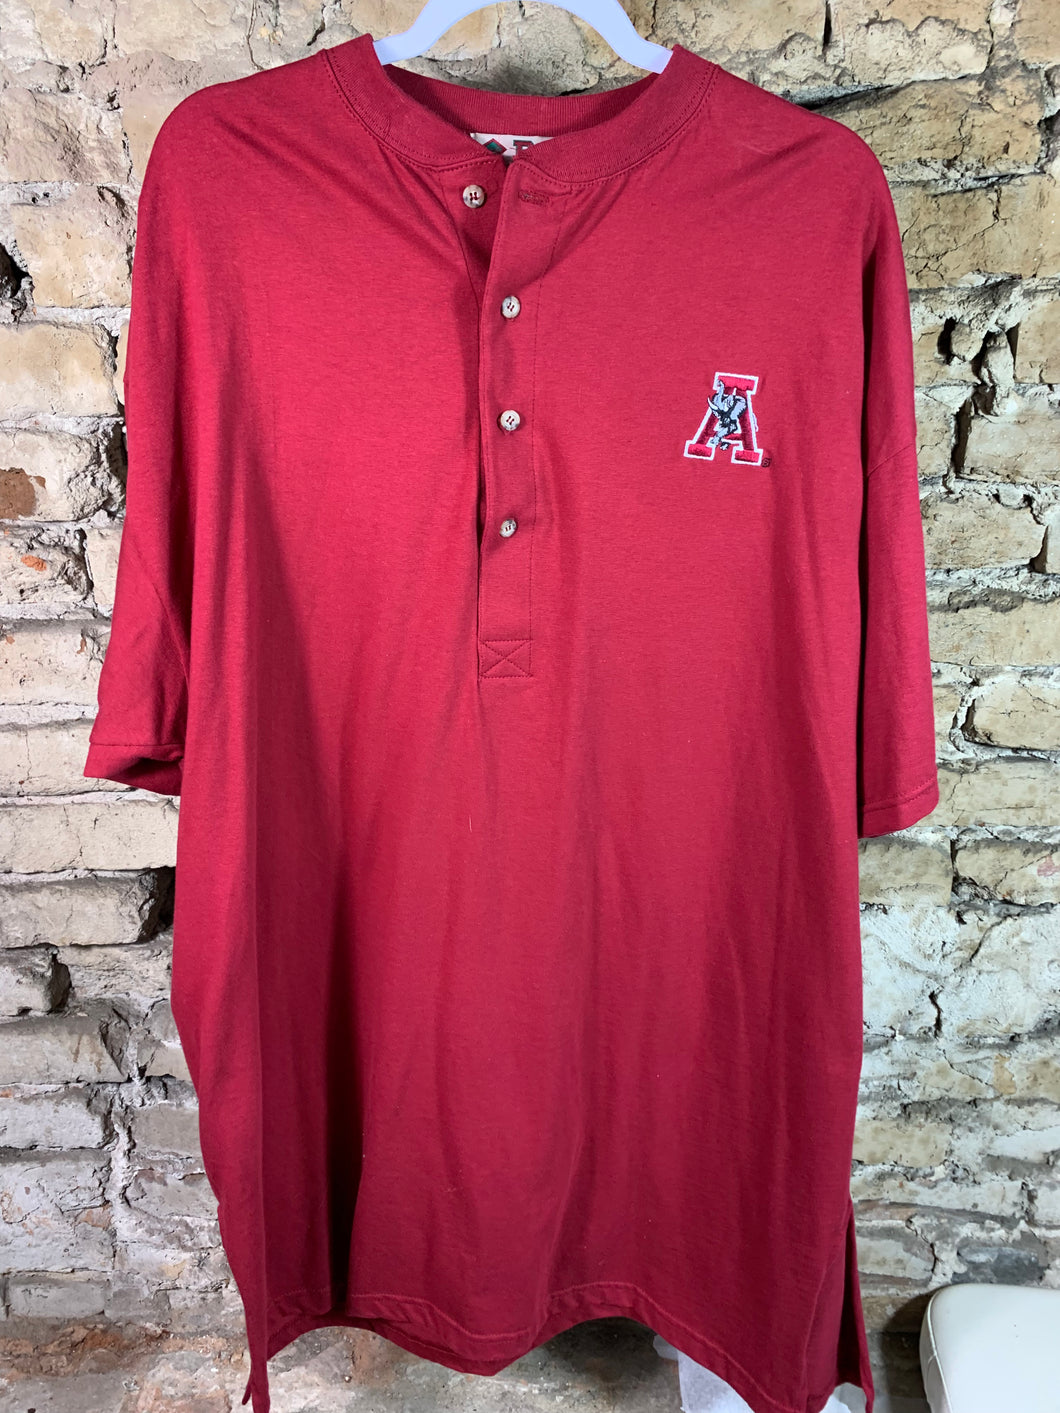 Vintage Oversized Alabama Shirt XL